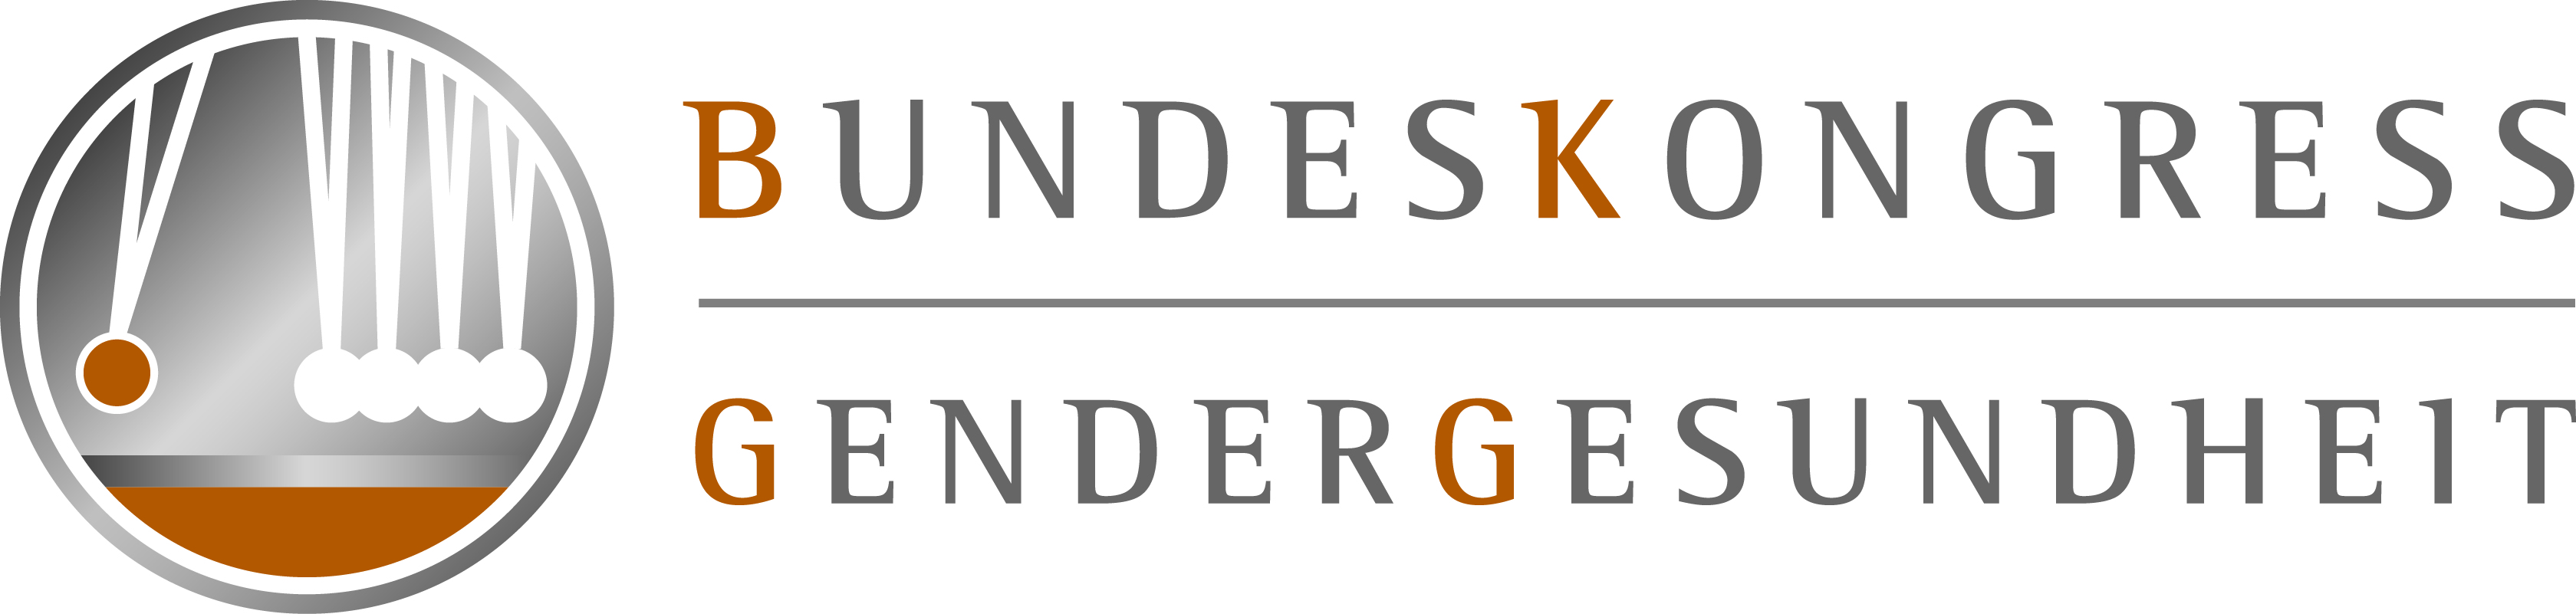 Bundeskongress Logo Final CMYK 300dpi